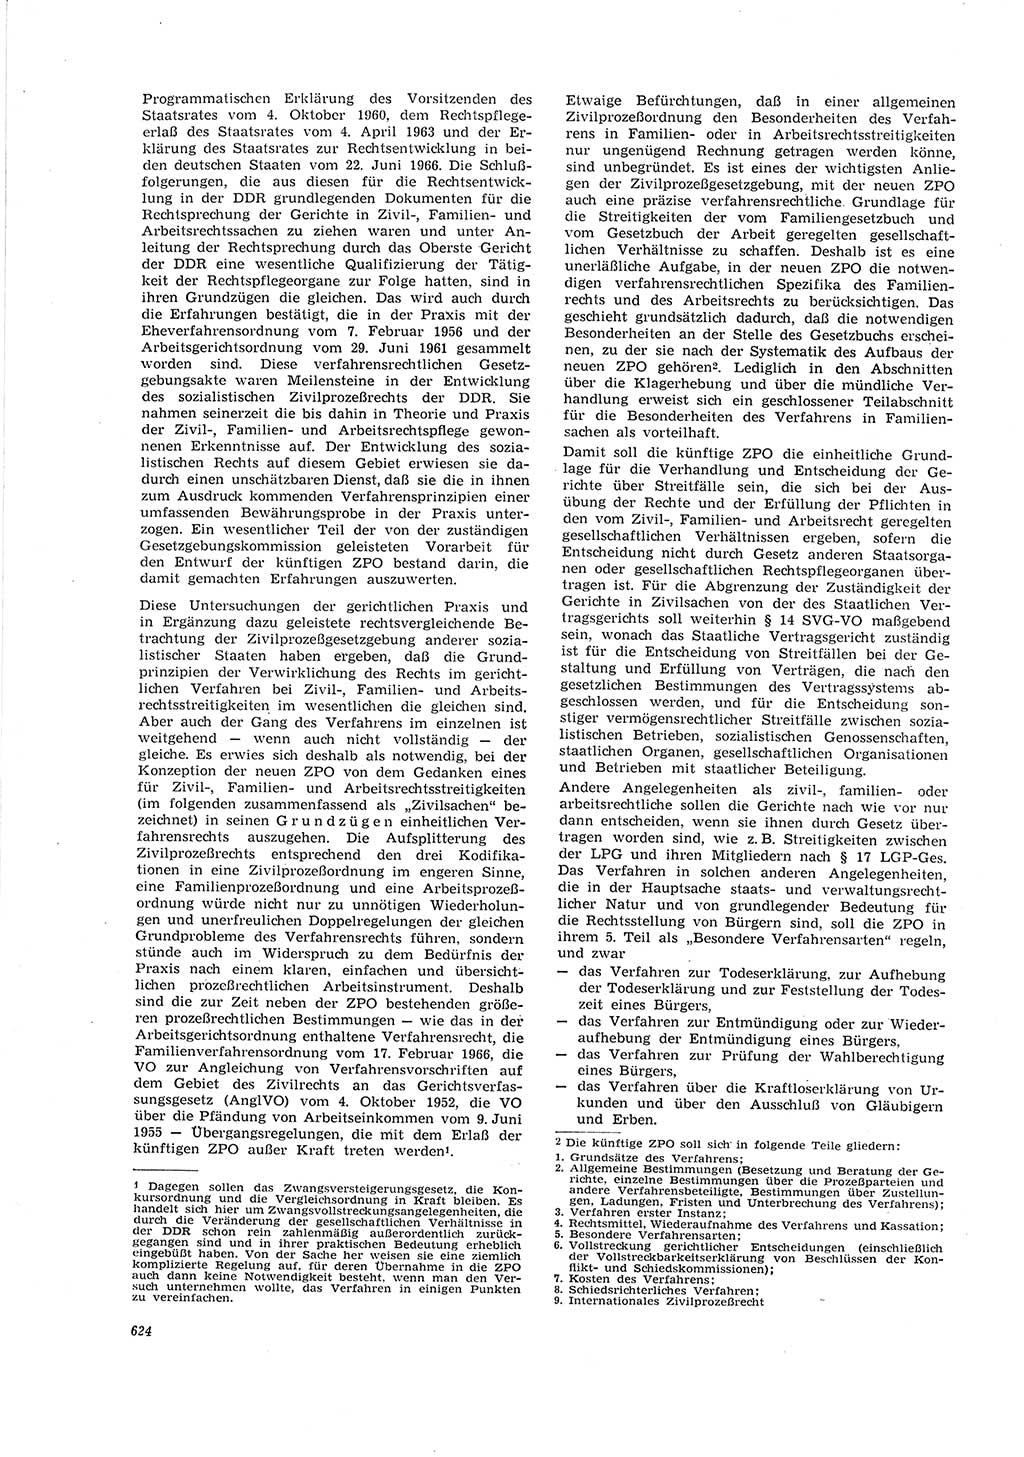 Neue Justiz (NJ), Zeitschrift für Recht und Rechtswissenschaft [Deutsche Demokratische Republik (DDR)], 20. Jahrgang 1966, Seite 624 (NJ DDR 1966, S. 624)